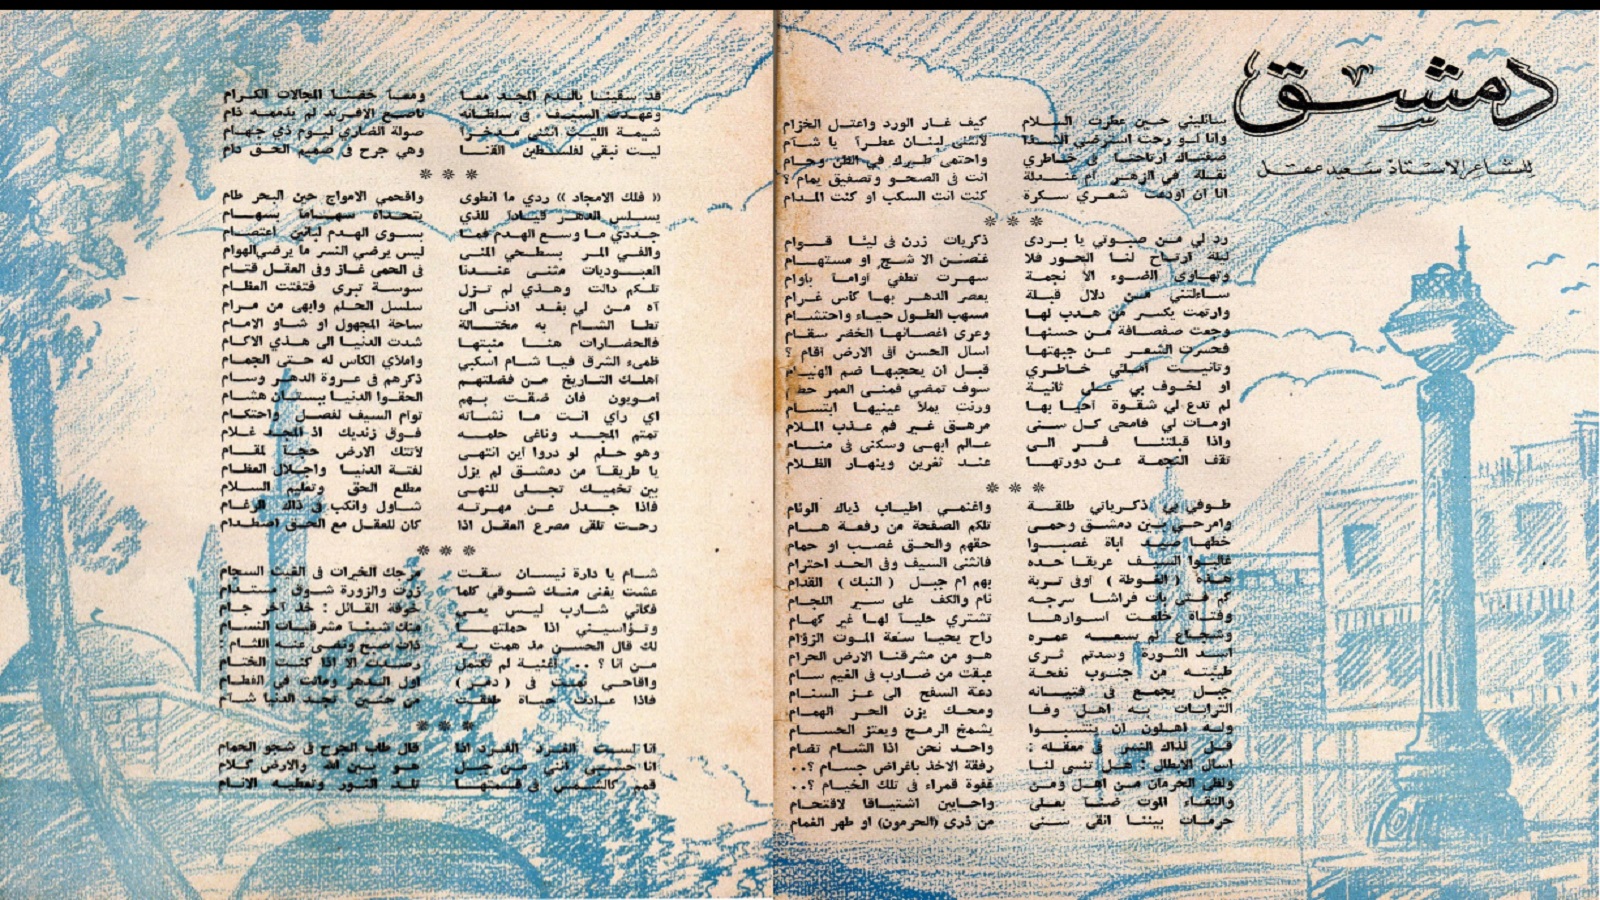 القصيدة كاملة في العدد الخامس من مجلة "الإذاعة السورية"، تشرين الثاني 1953.